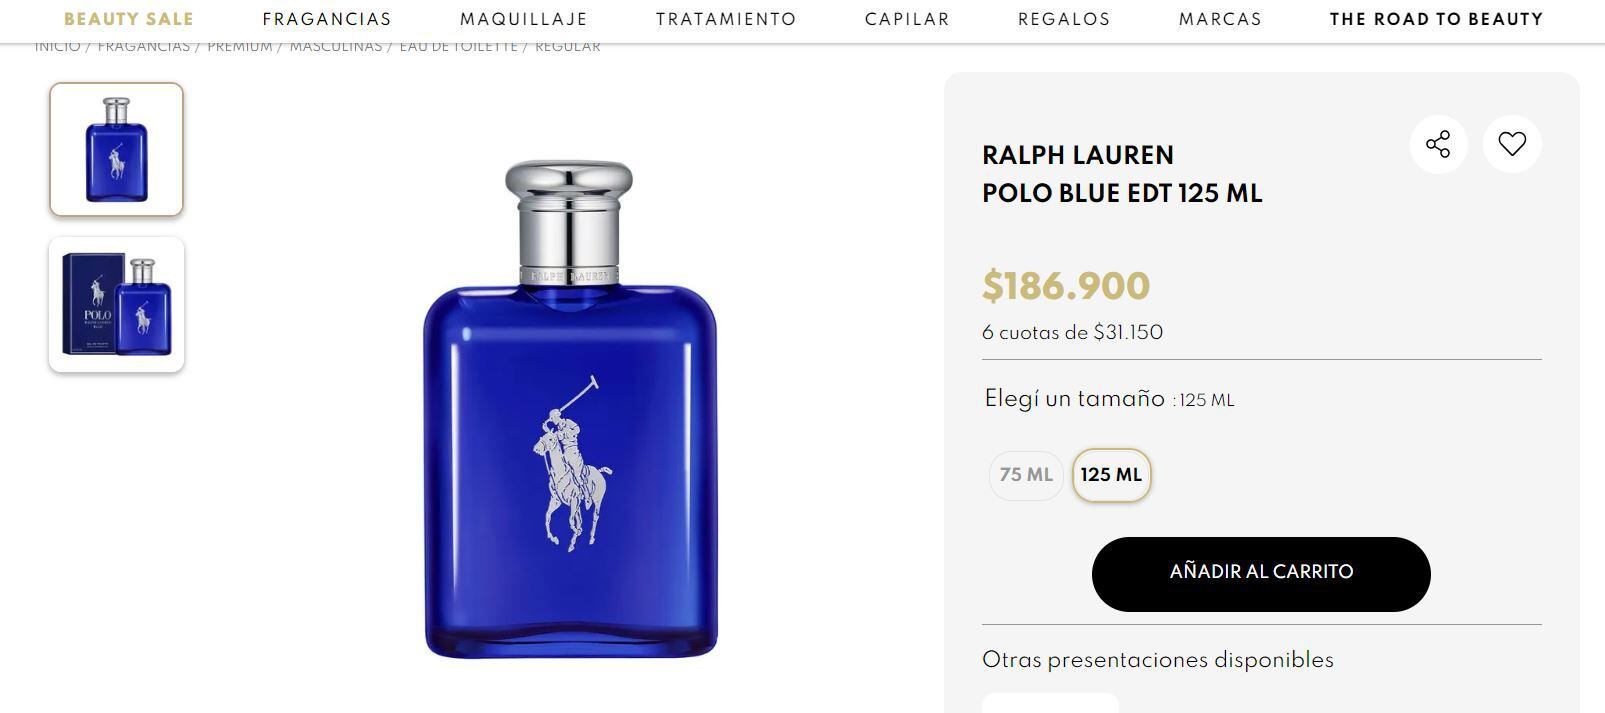 Esto sale el perfume Polo Blue de Ralph Lauren en Argentina.